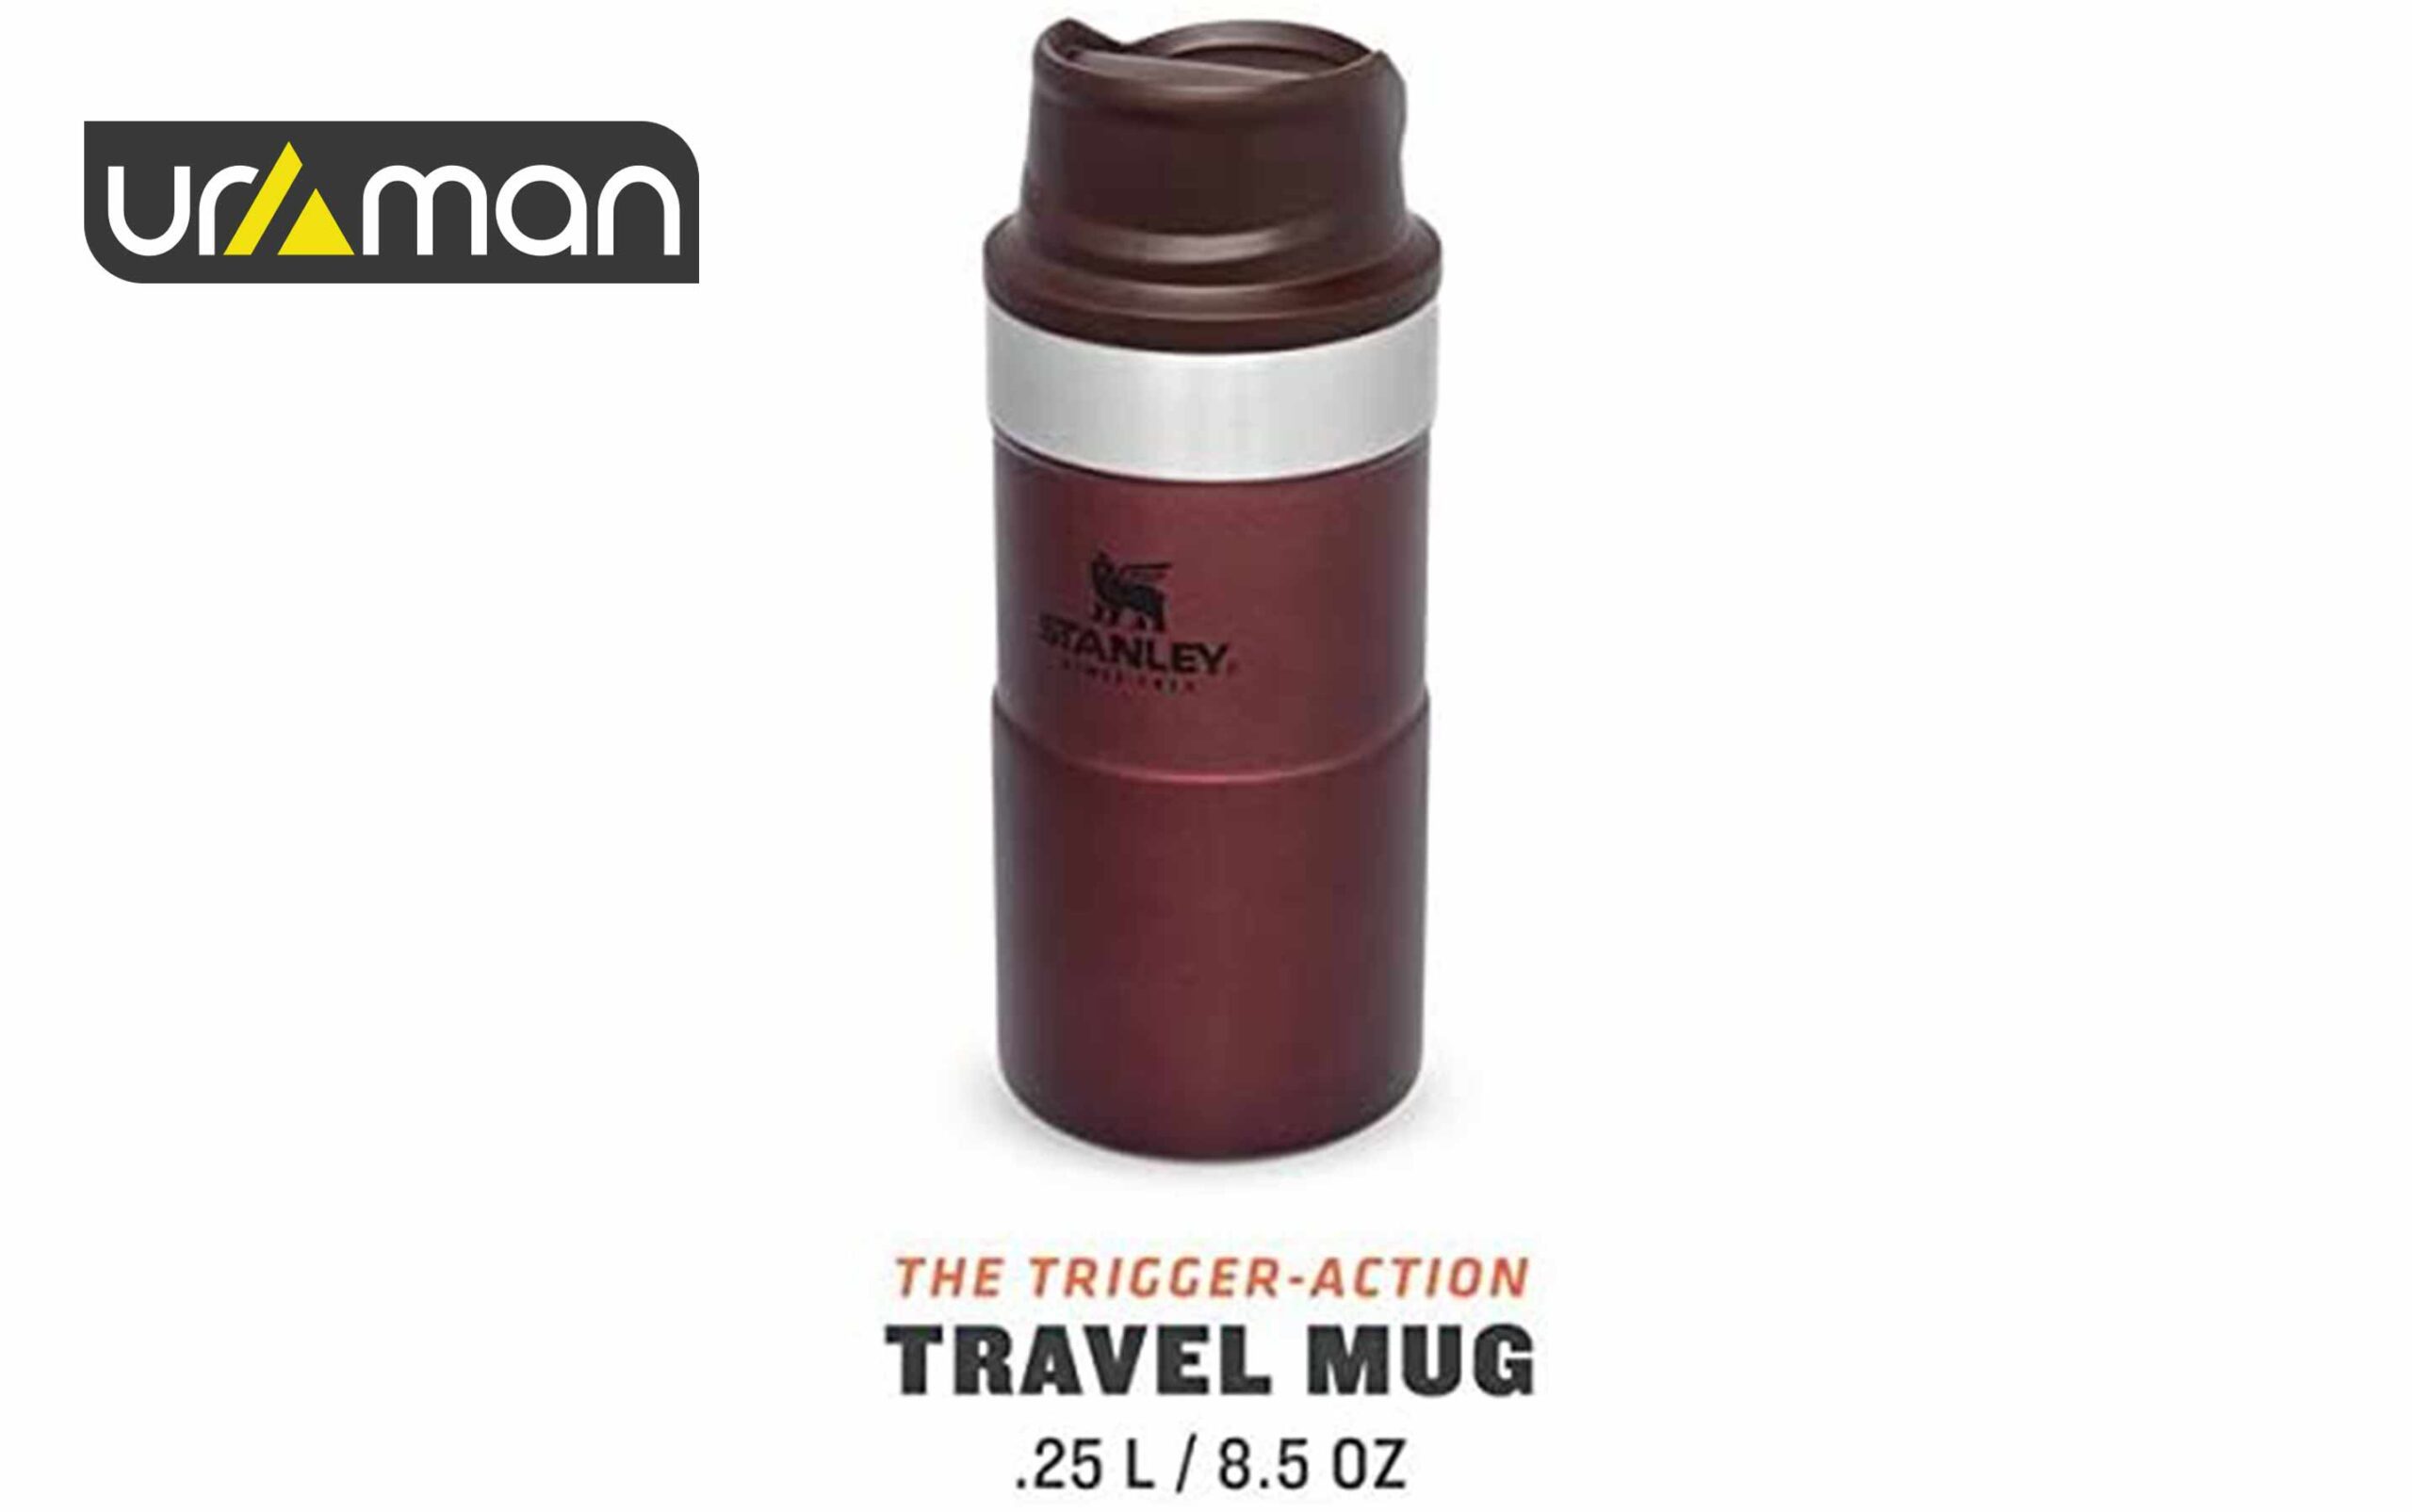 ماگ دکمه دار استنلی مدل The Trigger - Action Travel mug 0.35L